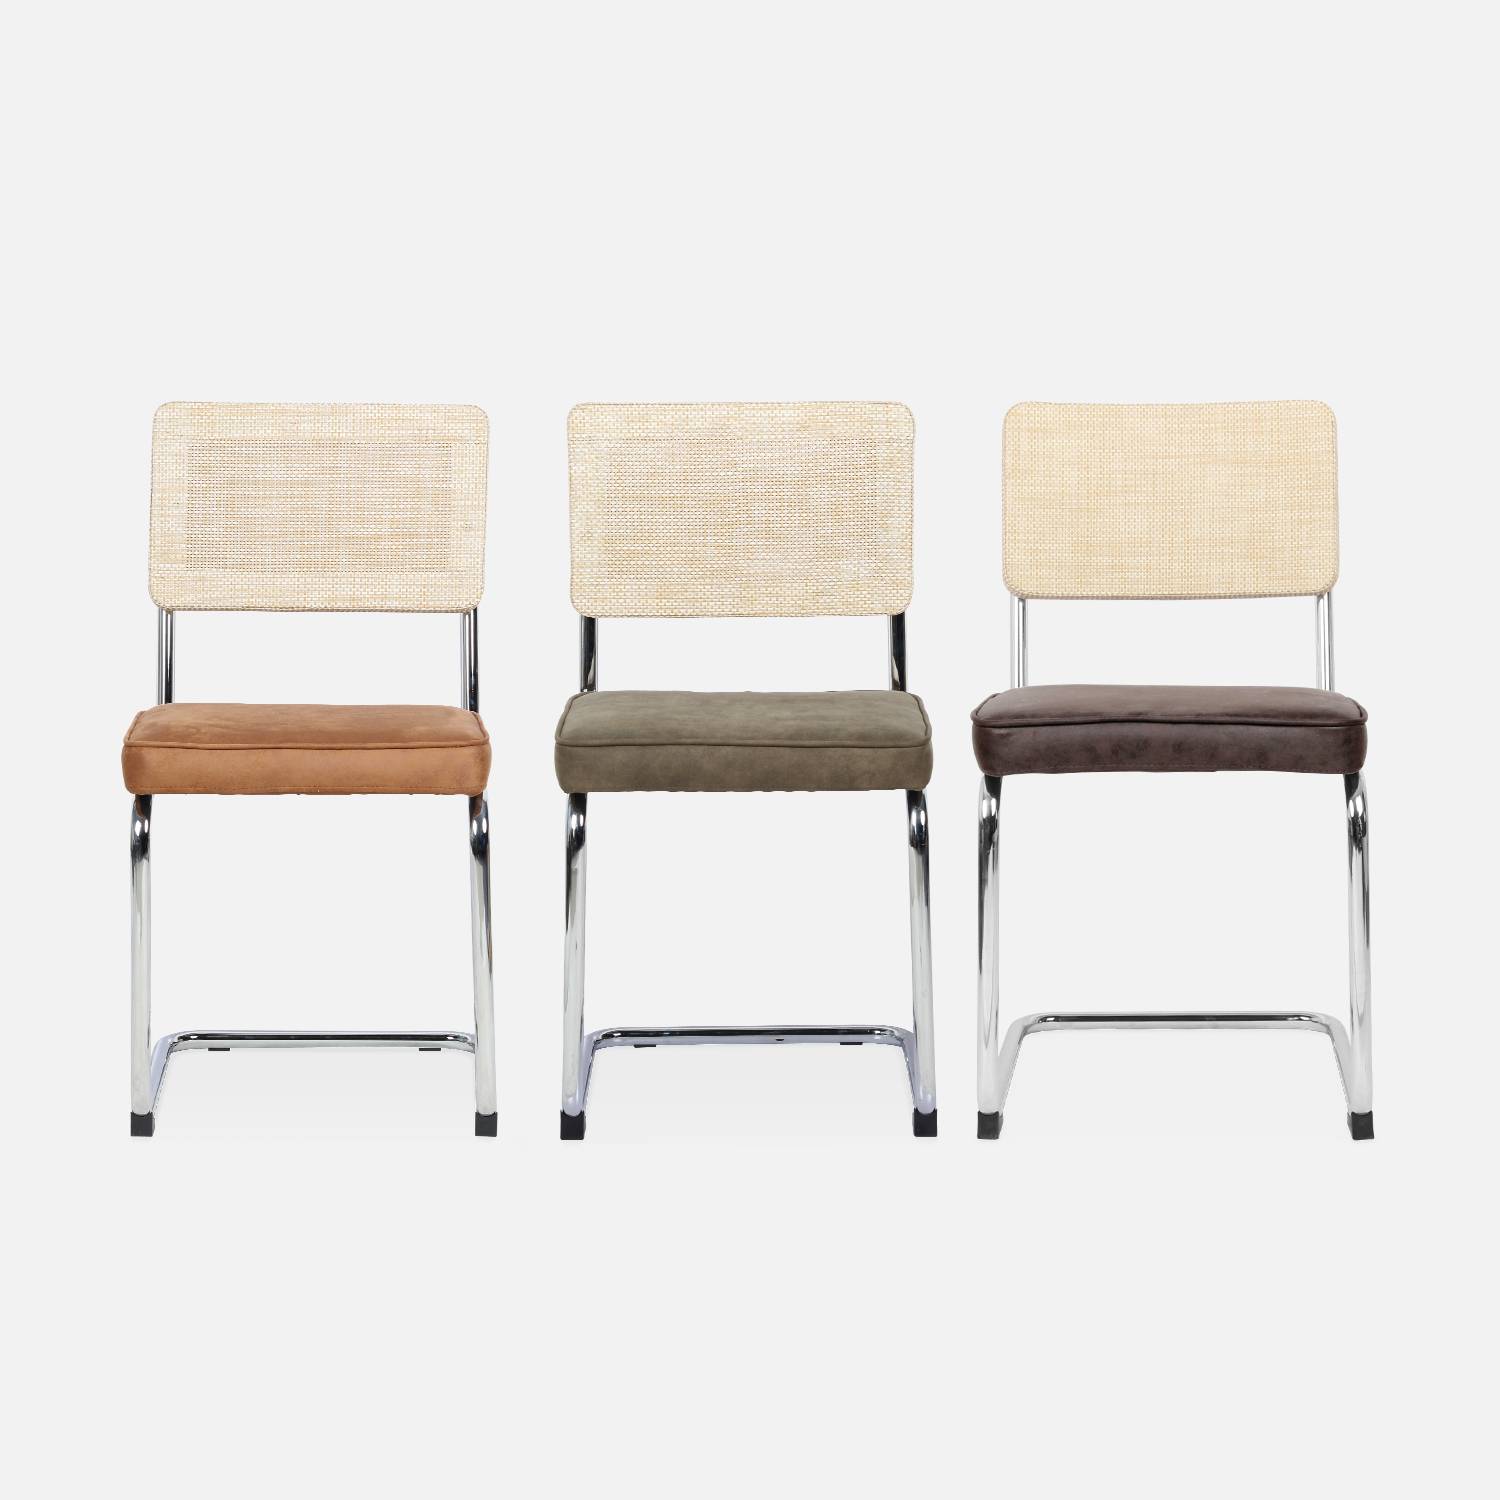 2 cadeiras cantilever - Maja - tecido caqui e resina com efeito rattan, 46 x 54,5 x 84,5 cm Photo9